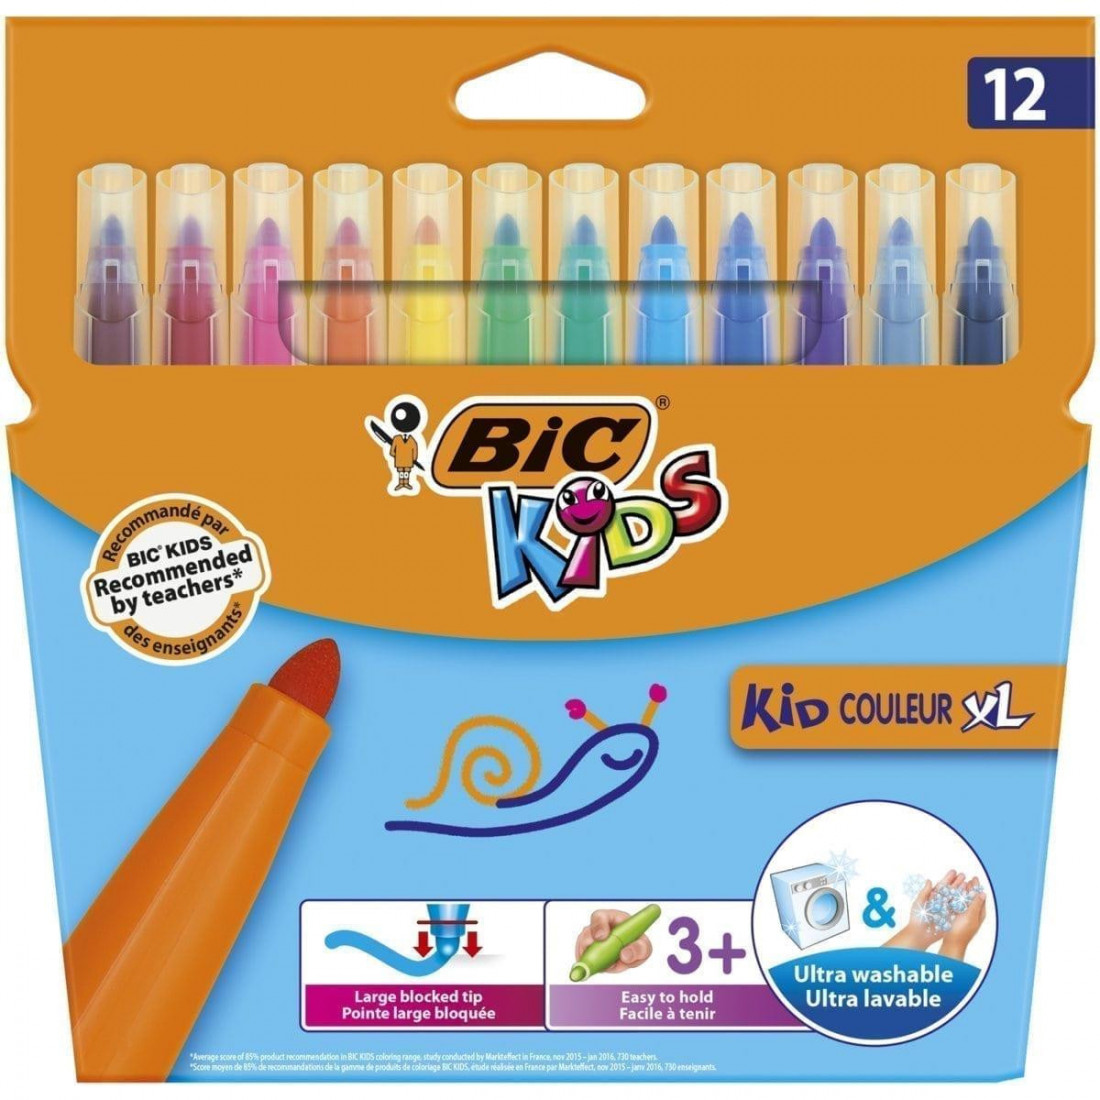 Μαρκαδόροι 12 Χρωμάτων Kid Couleur XL Bic